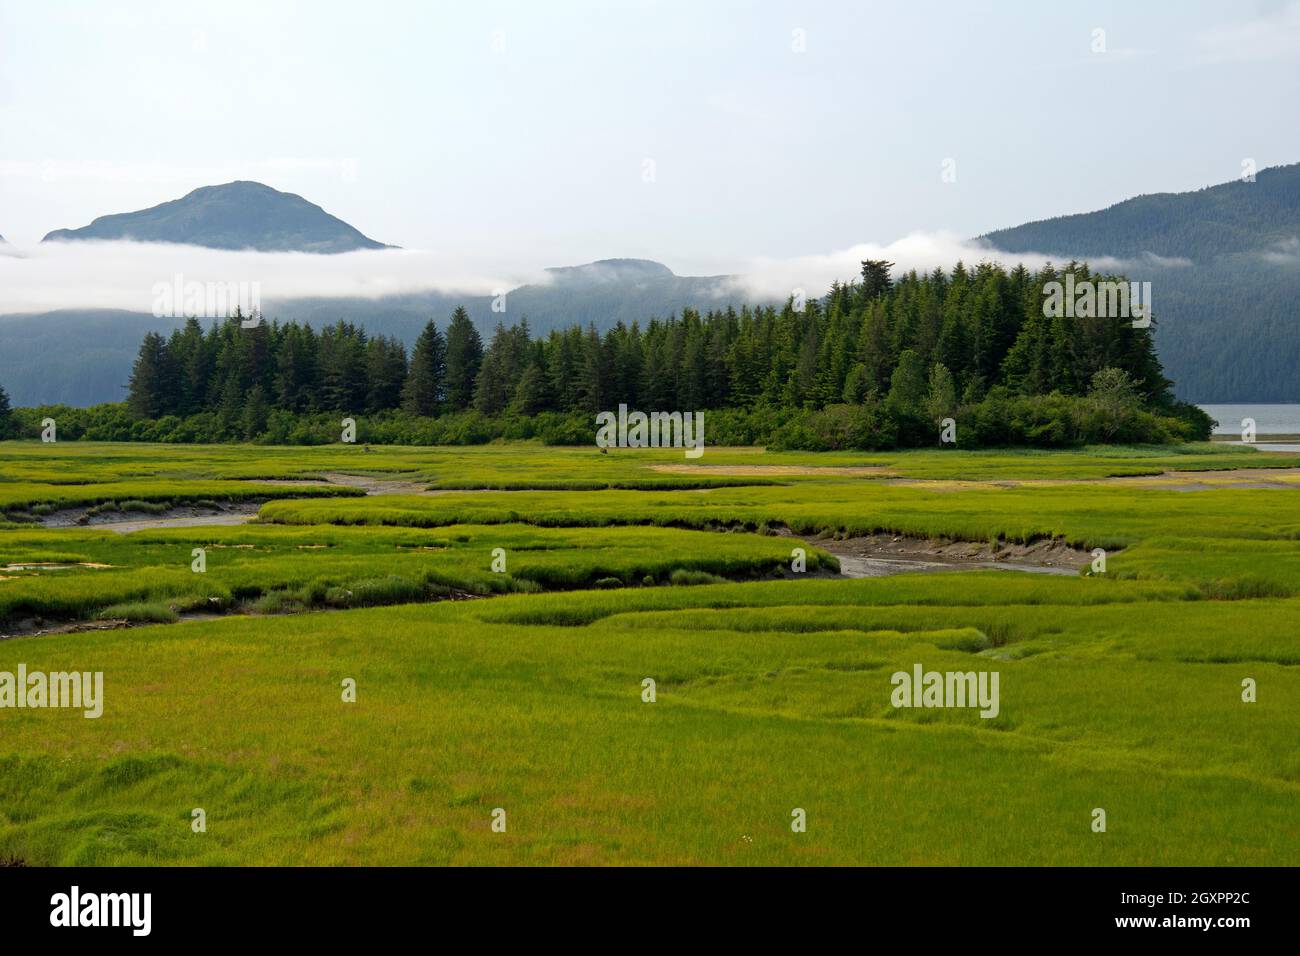 Scenic landscape in Cordova, Alaska, USA Stock Photo